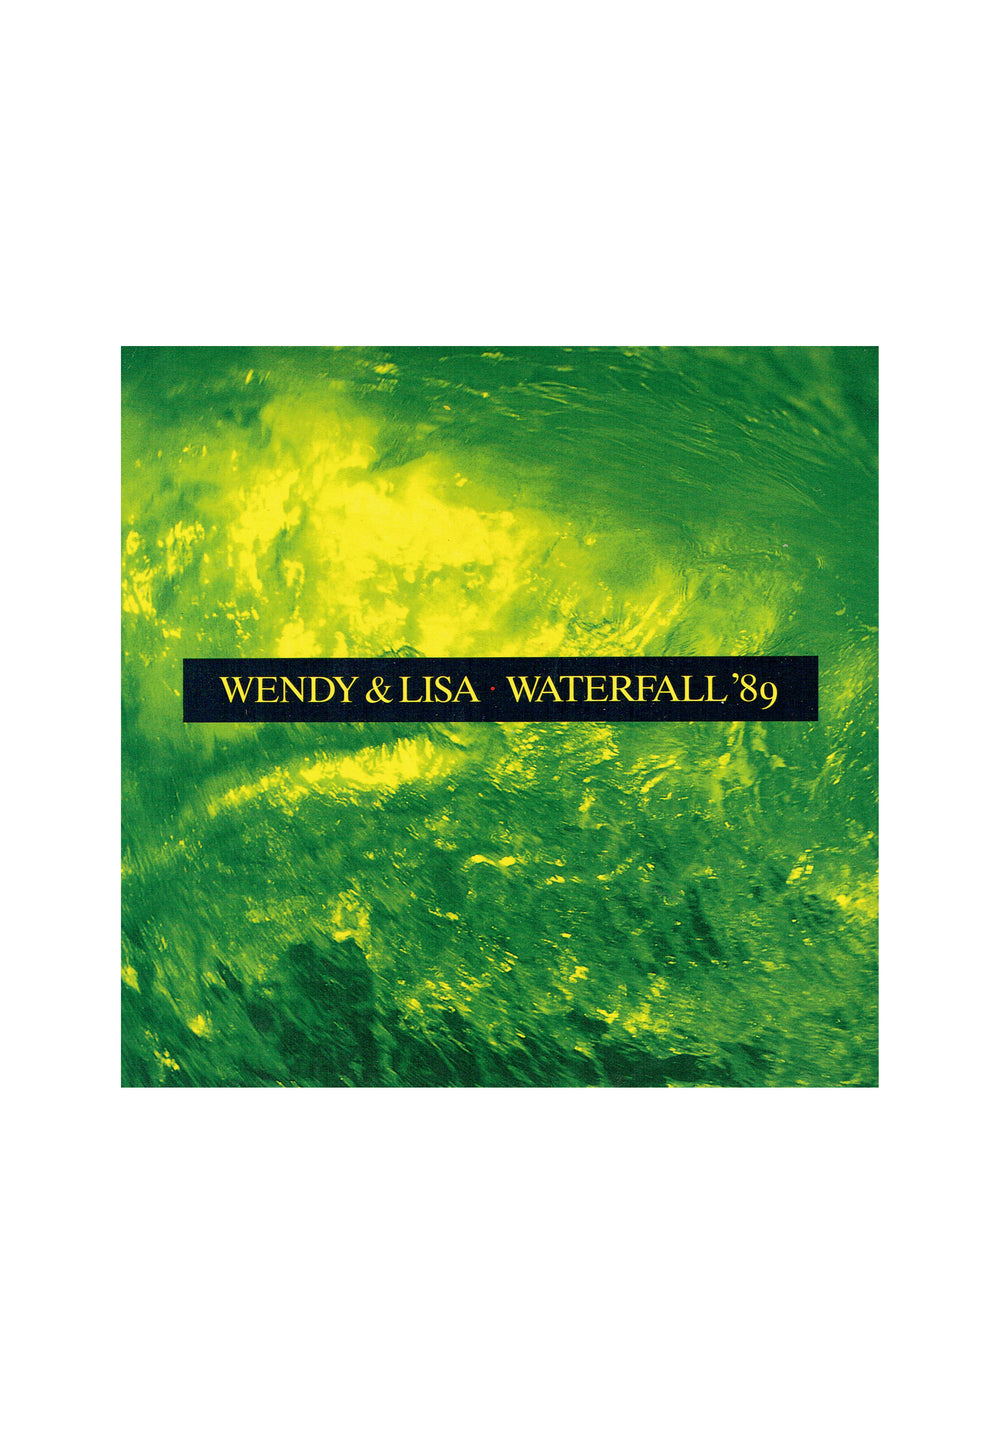 Wendy & Lisa Waterfall '89 UK 7 Inch Vinyl 1989 Pre Owned 2 Tracks Prince SMS